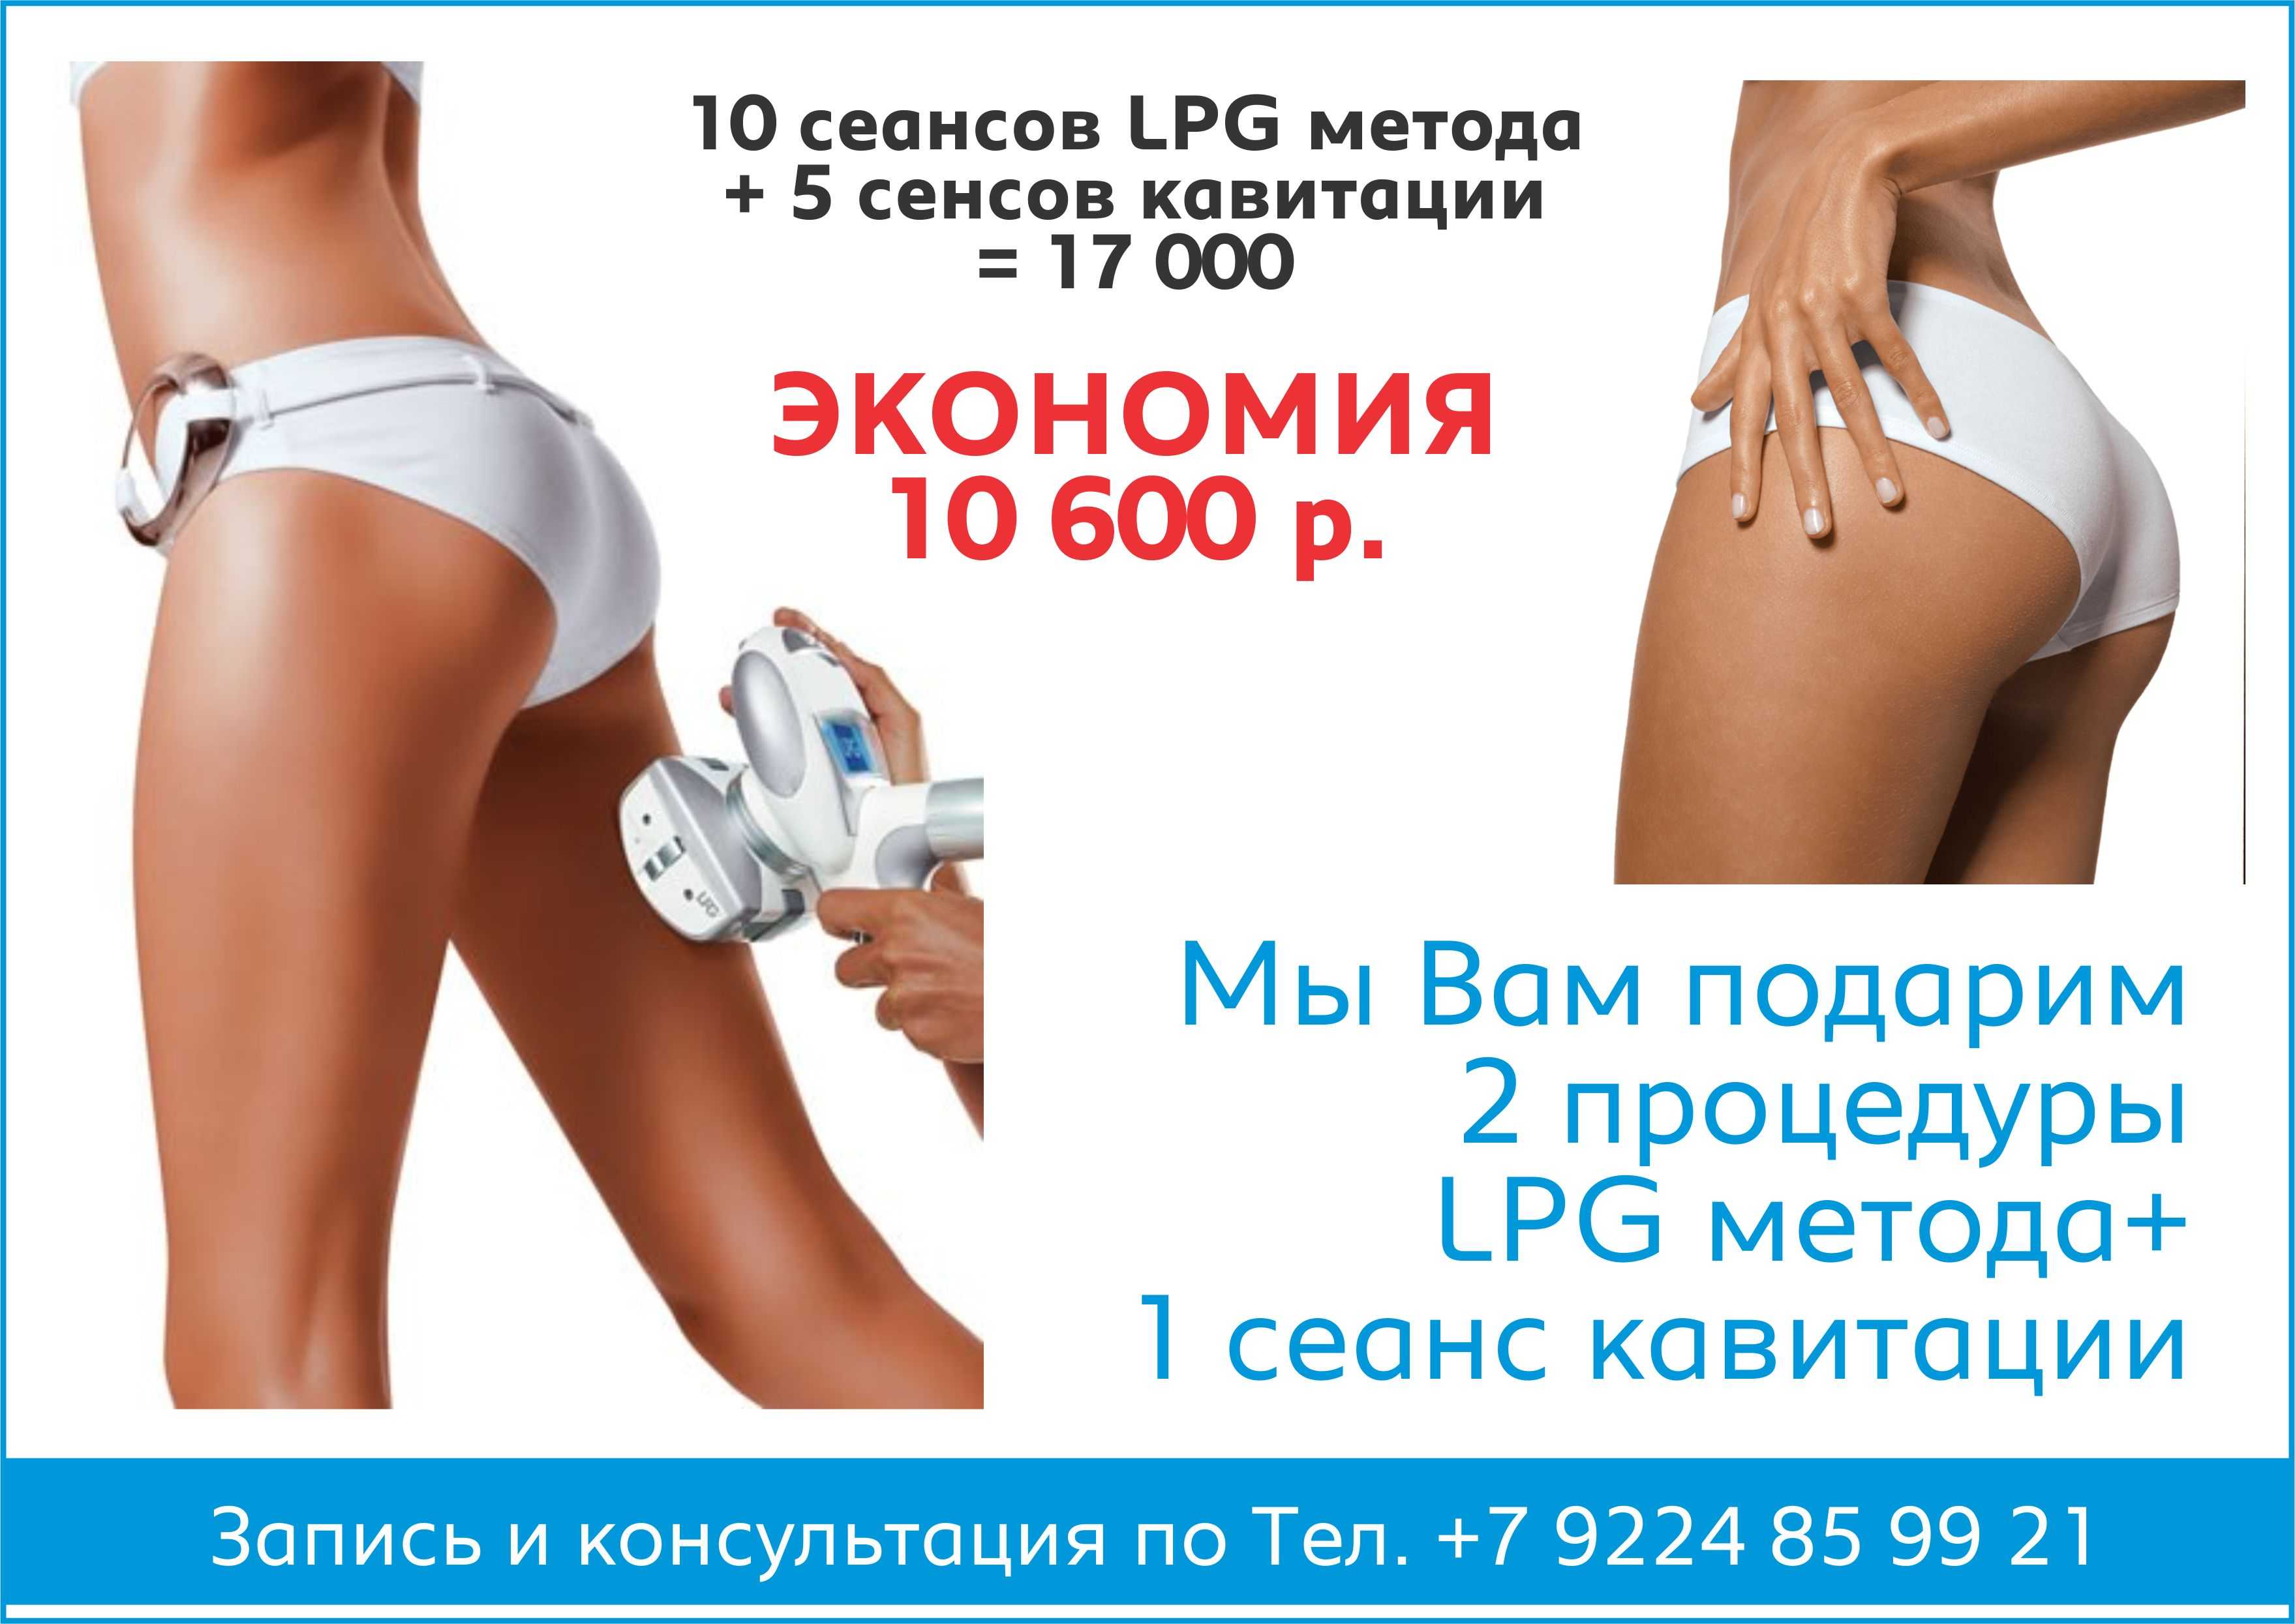 Lpg массаж польза и вред. Вакуумный массаж лпж. Ролико-вакуумный массаж LPG. Аппаратный массаж для похудения LPG. LPG массаж акция.